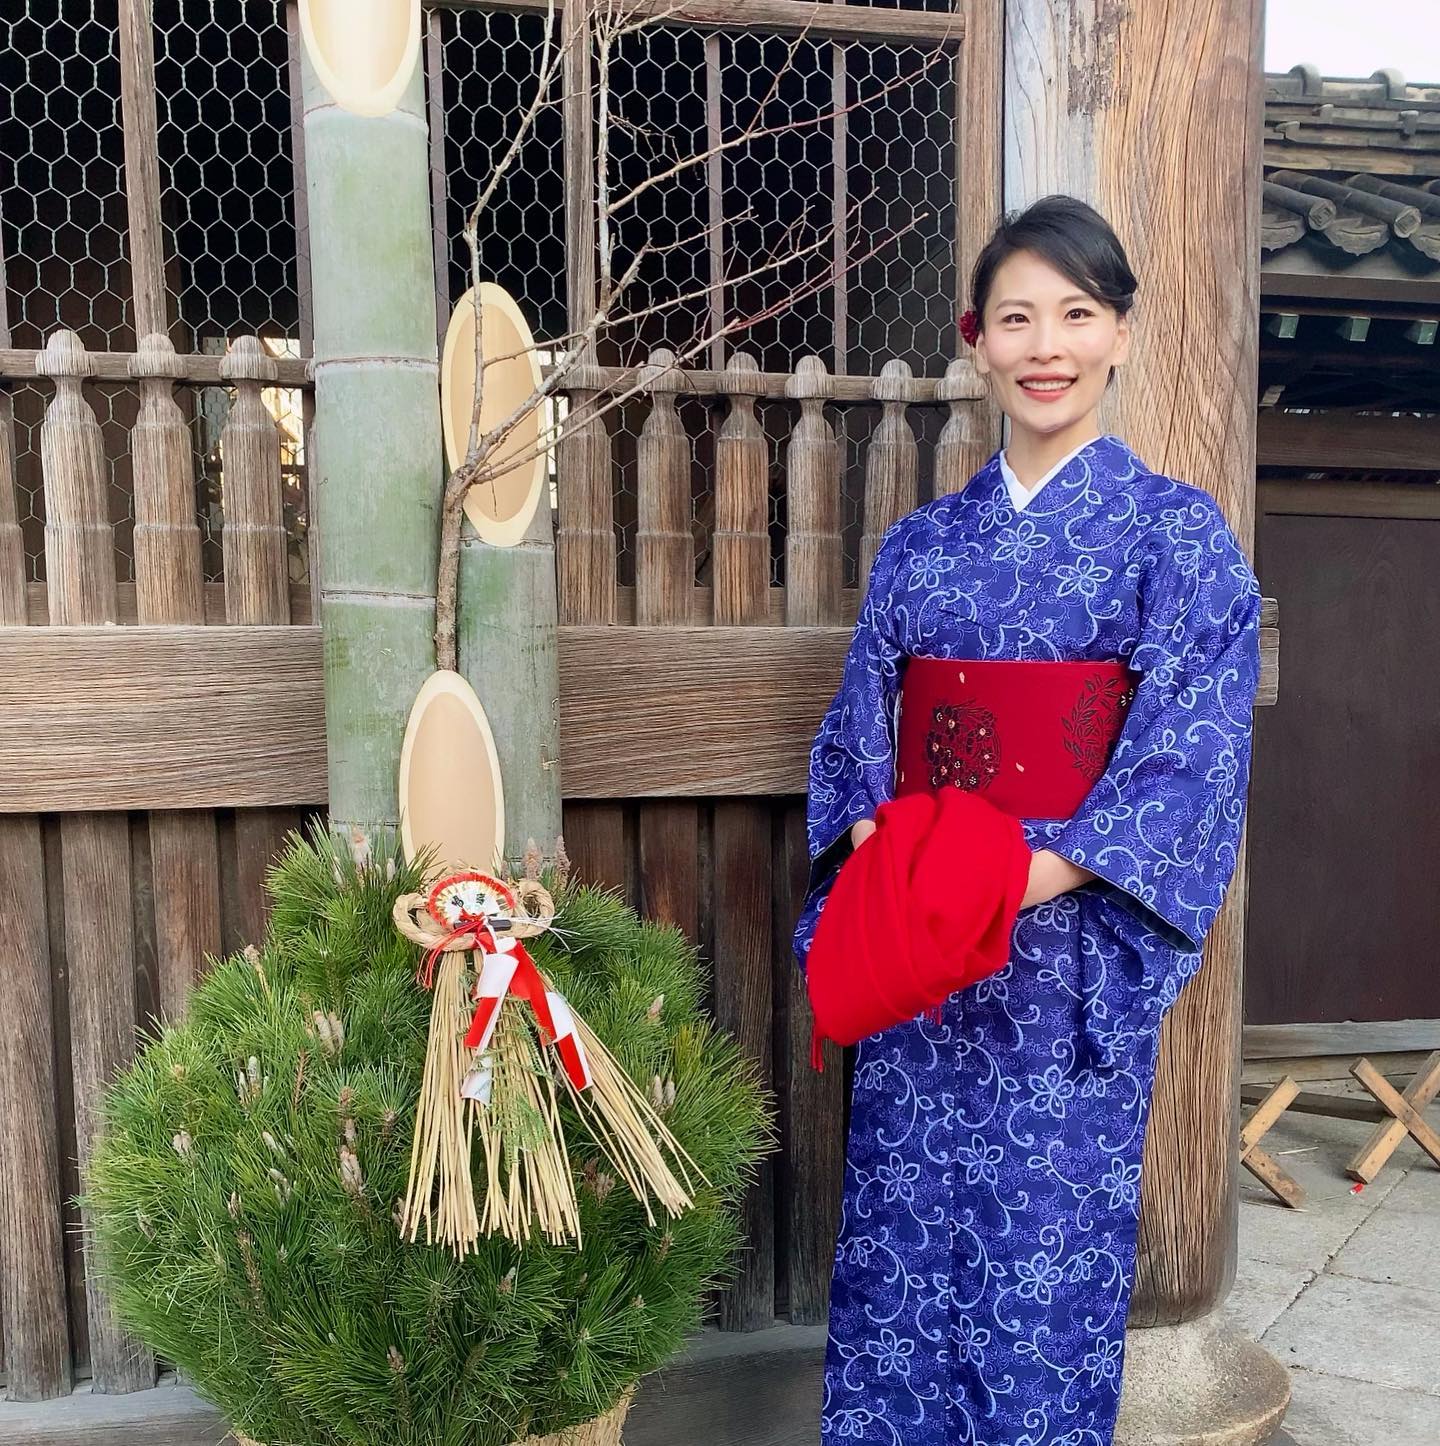 Happy New Year 2022️Lots of love big hugs!今年もよろしくお願いいたします#お正月 #japan #kimono#お正月じゃなくても #今年は着物たくさん着たい #ワインをこぼすから #洗える着物 #必須かもしれない